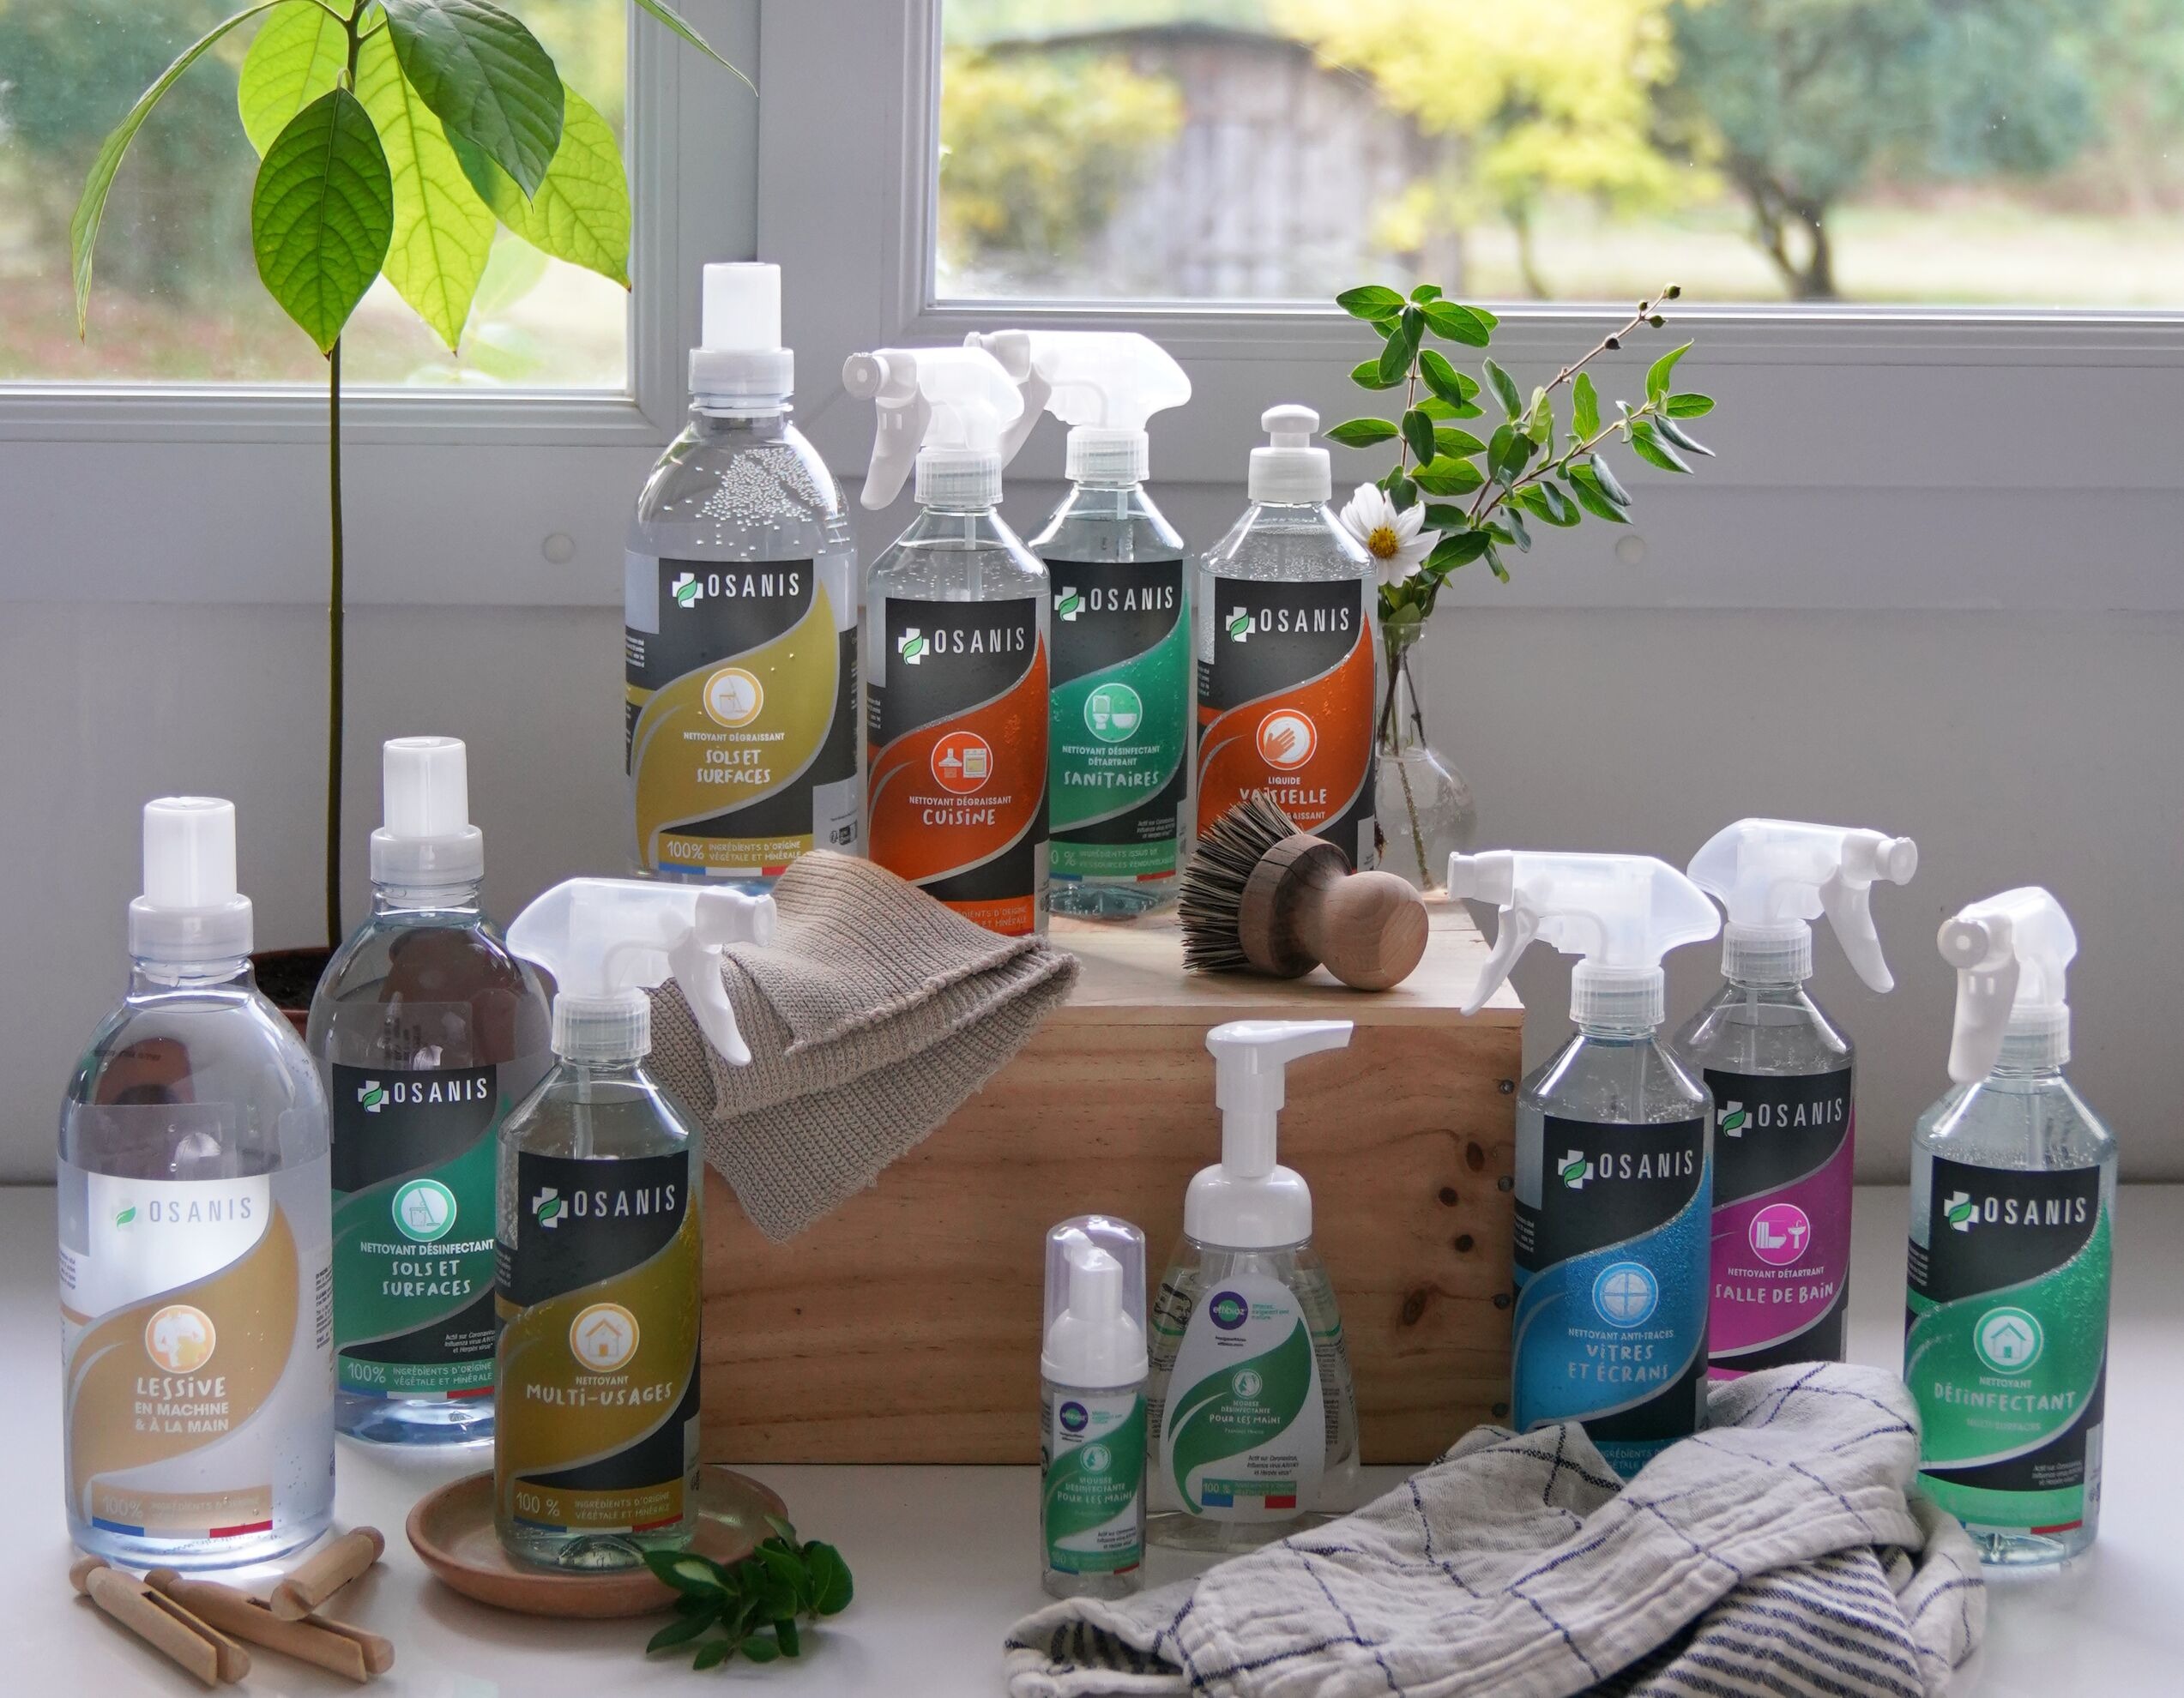 Nouvelle gamme de nettoyants OSANIS 100% végétale et biodégradable : une maison propre et saine sans compromis